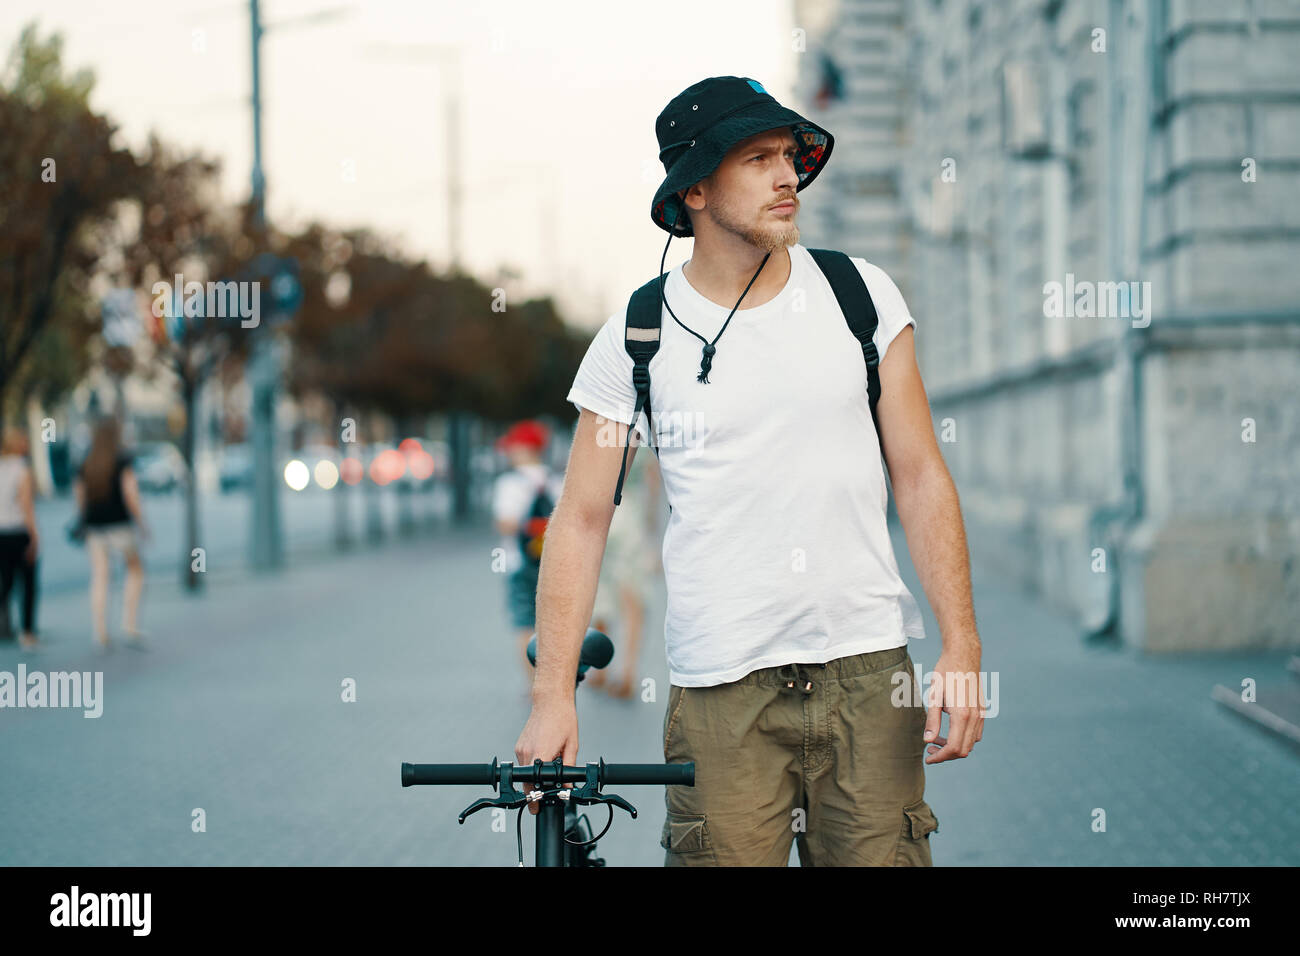 Un uomo in sella a una moto in una vecchia città europea all'esterno. Lo stile di vita, trasporti ecologici, persone concetto. Foto Stock